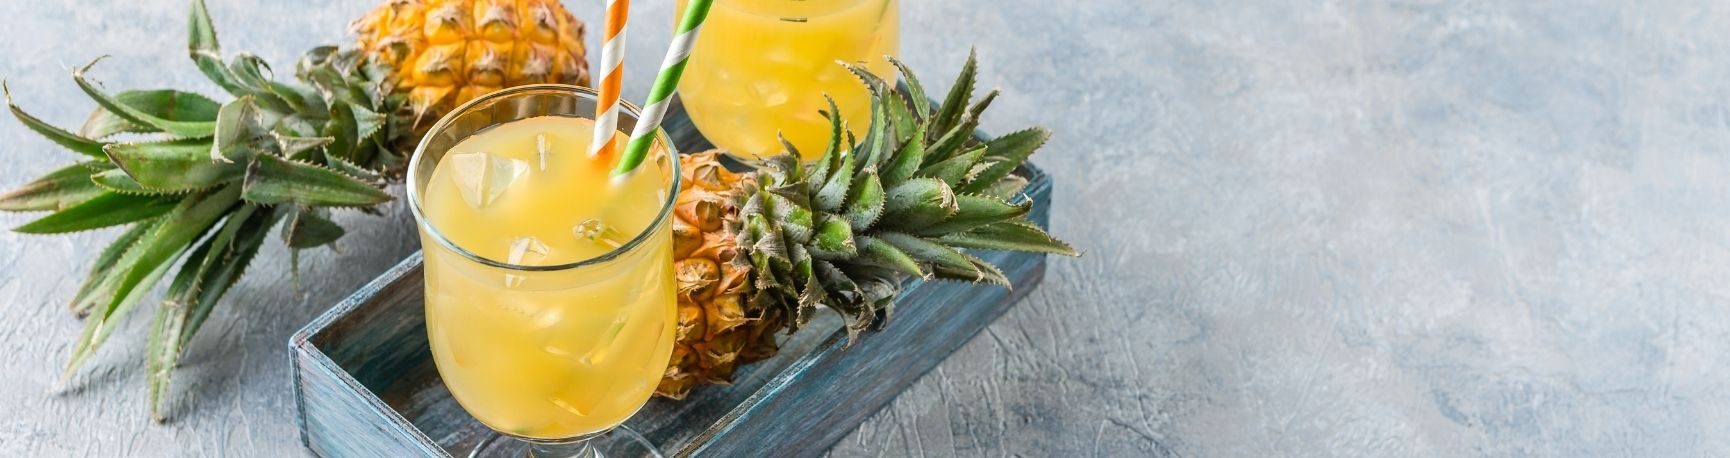 Cocktail ananas avec fruit et verre à pied